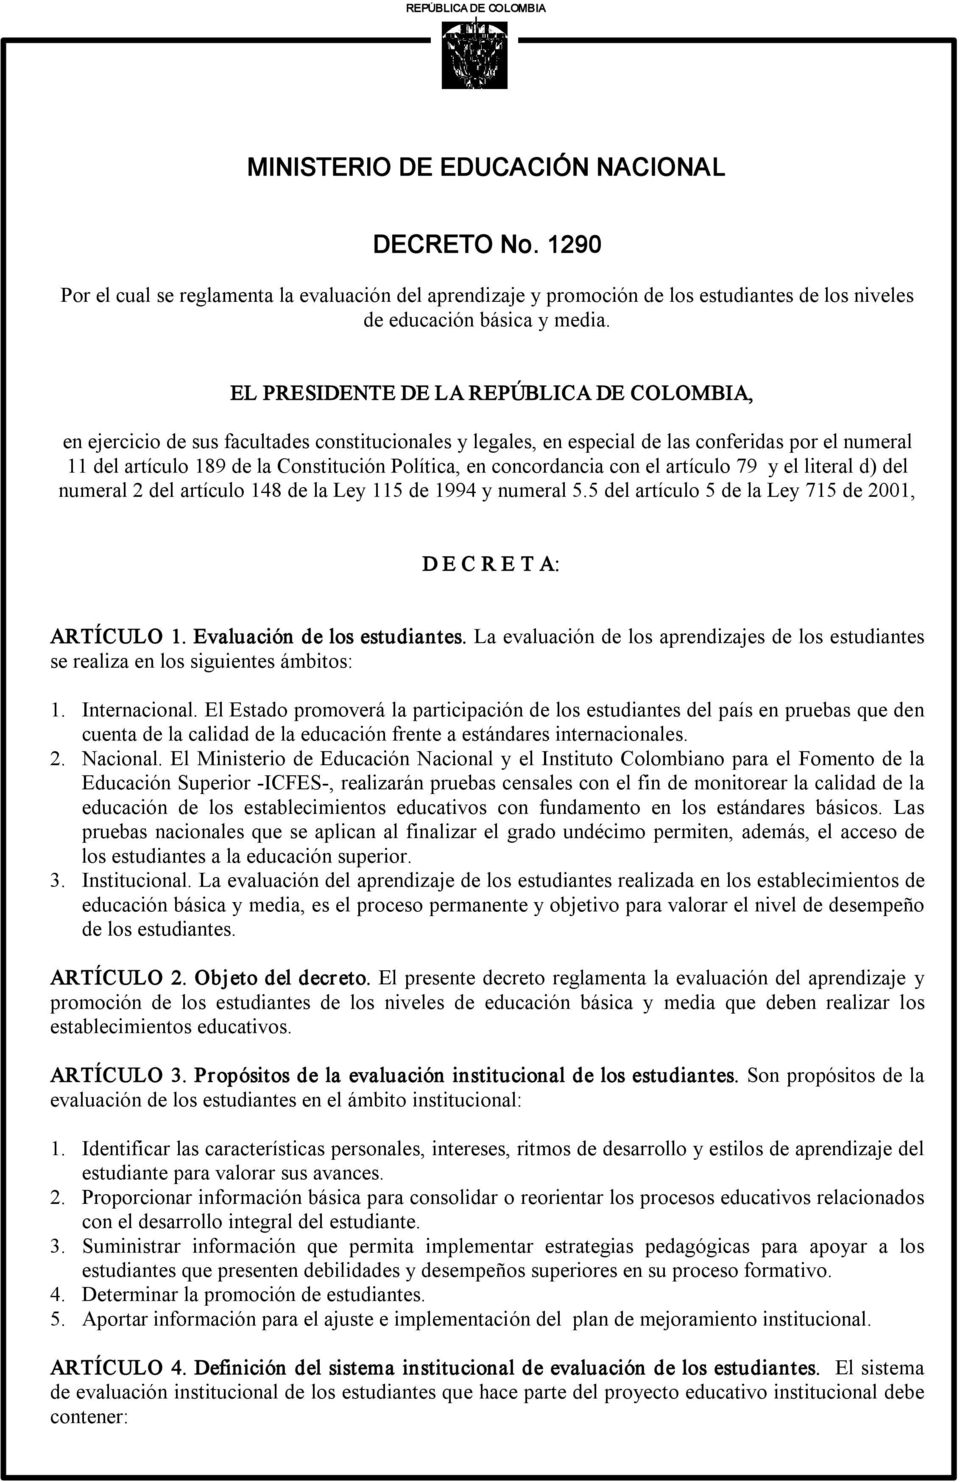 EL PRESIDENTE DE LA REPÚBLICA DE COLOMBIA, en ejercicio de sus facultades constitucionales y legales, en especial de las conferidas por el numeral 11 del artículo 189 de la Constitución Política, en